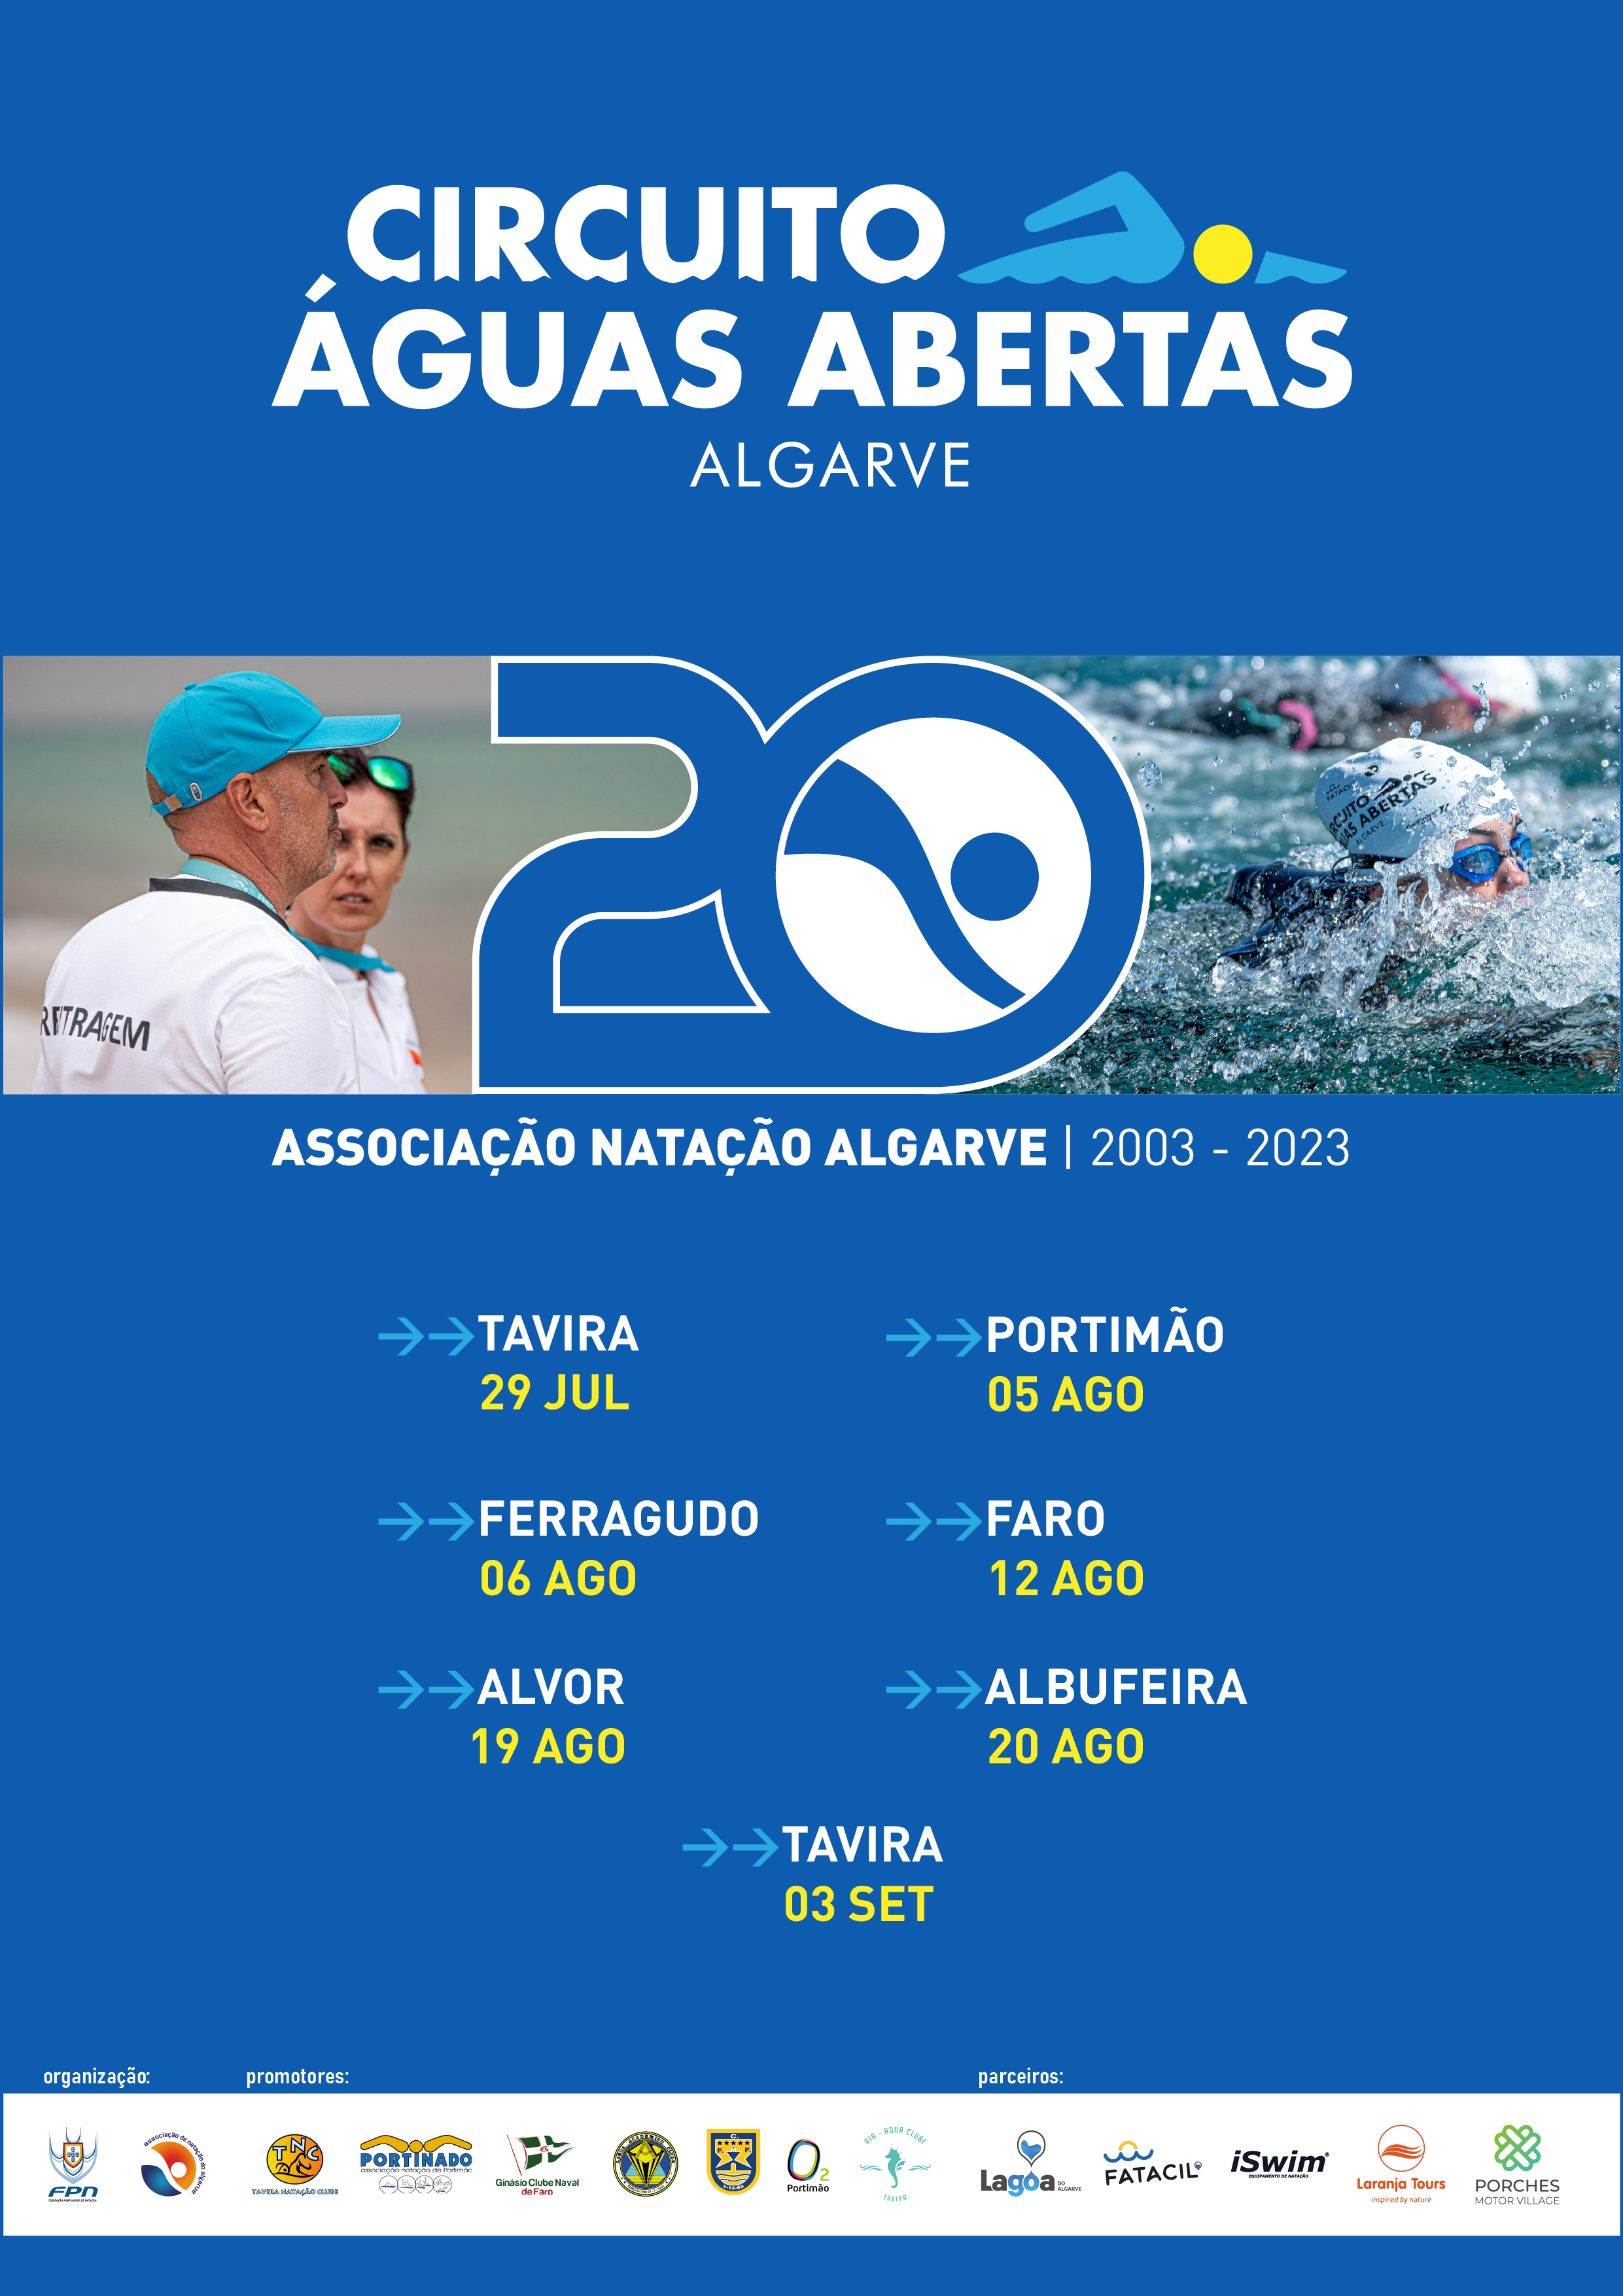 Revista Águas do Algarve n.º 3 - 2023 by Águas do Algarve, S.A.